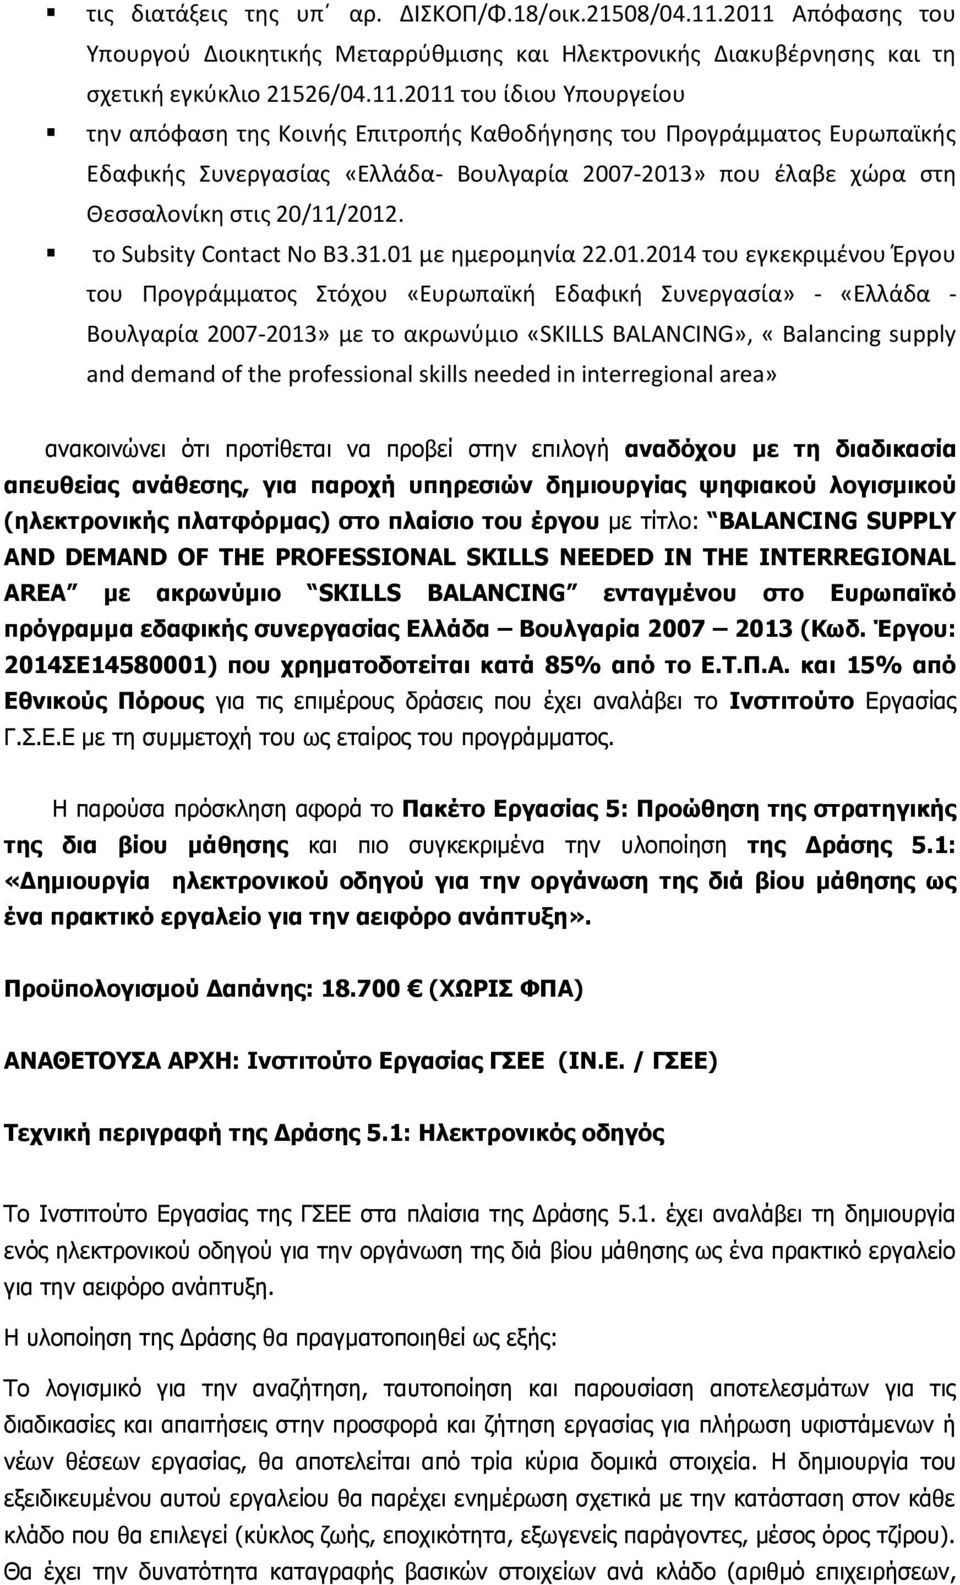 Προγράμματος Ευρωπαϊκής Εδαφικής Συνεργασίας «Ελλάδα- Βουλγαρία 2007-2013